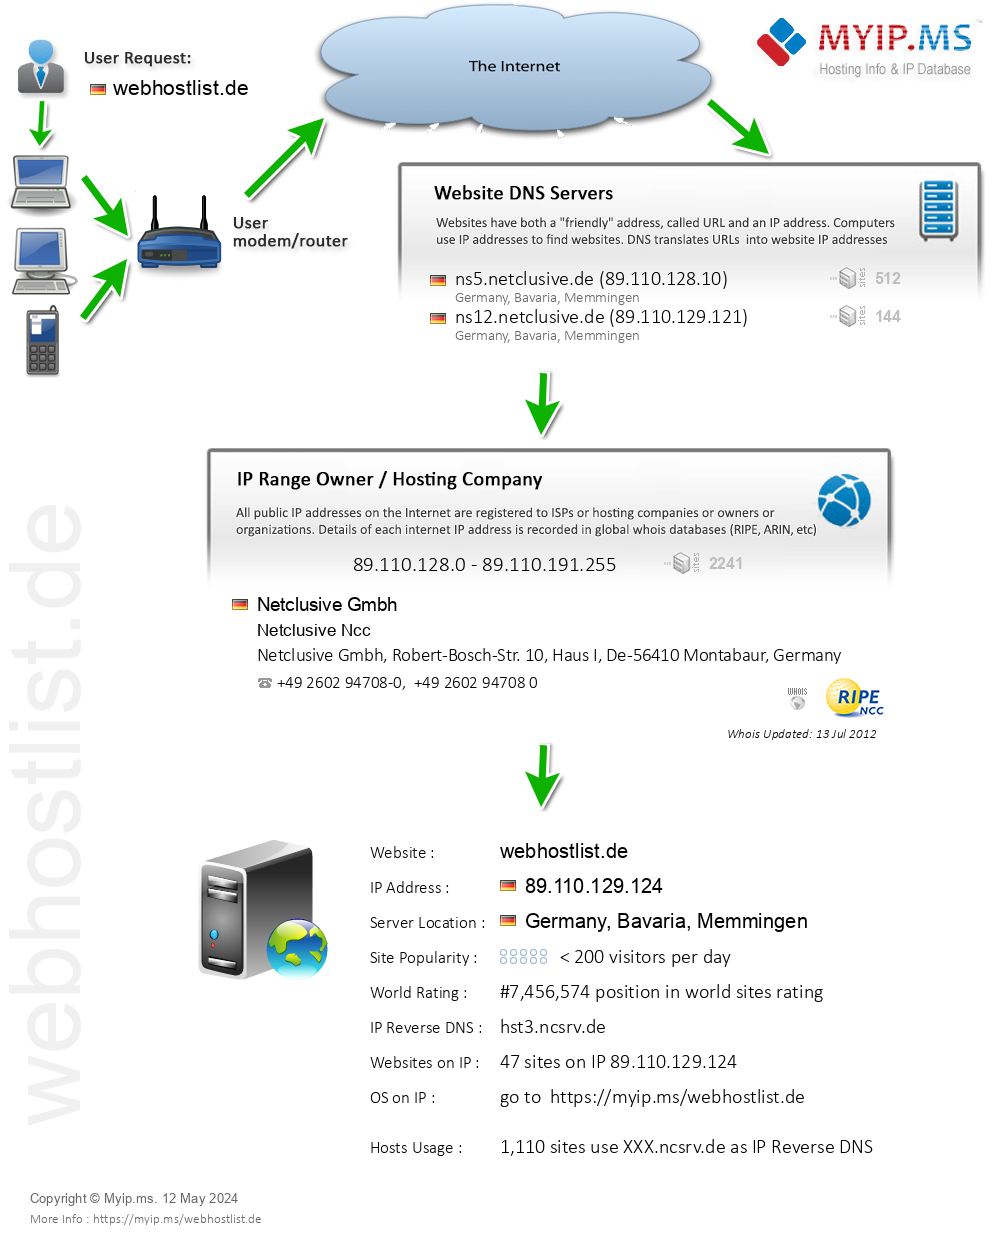 Webhostlist.de - Website Hosting Visual IP Diagram